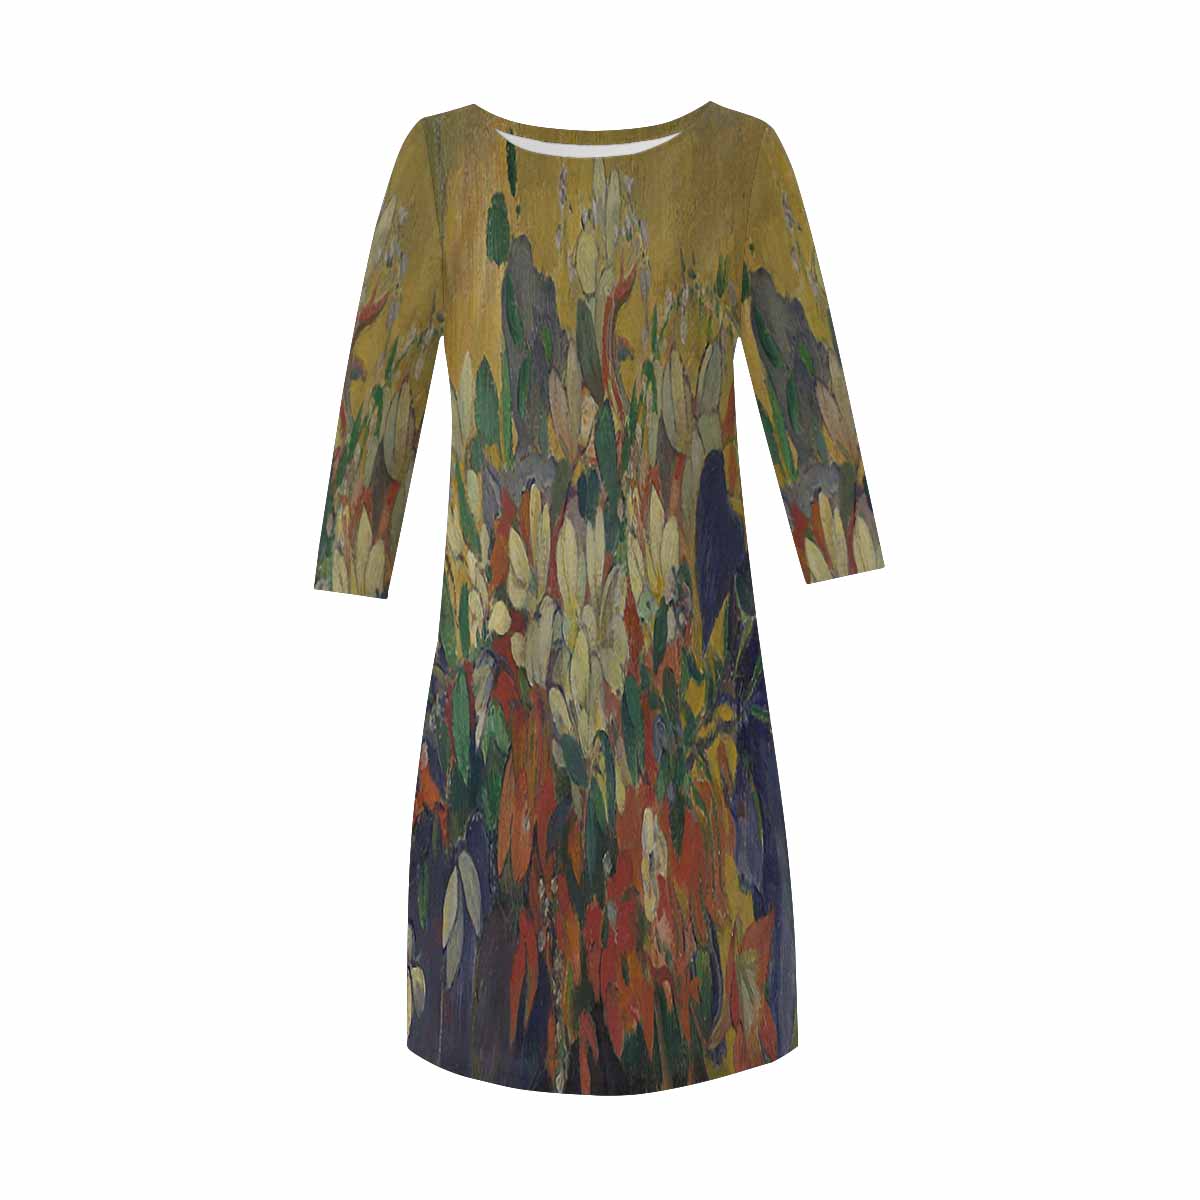 Vintage floral loose dress, model D29532 Design 10